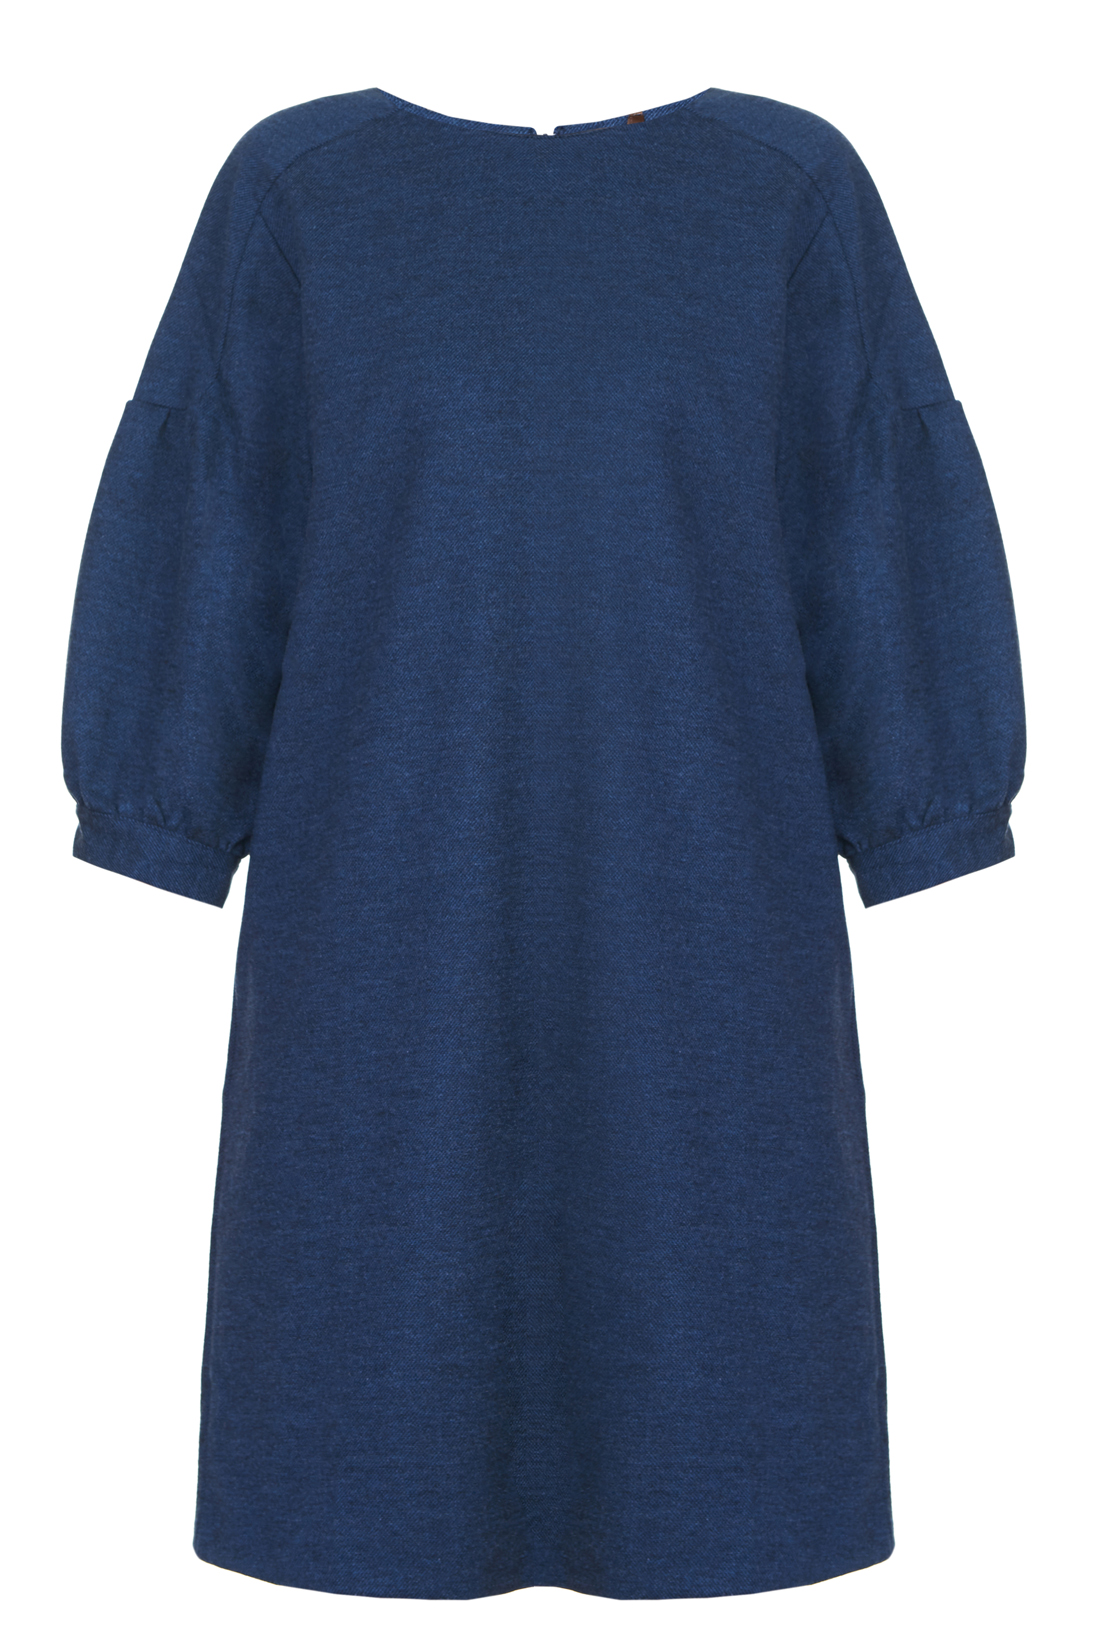 Платье с оригинальными рукавами (арт. baon B457519), размер XXL, цвет blue night melange#синий Платье с оригинальными рукавами (арт. baon B457519) - фото 3